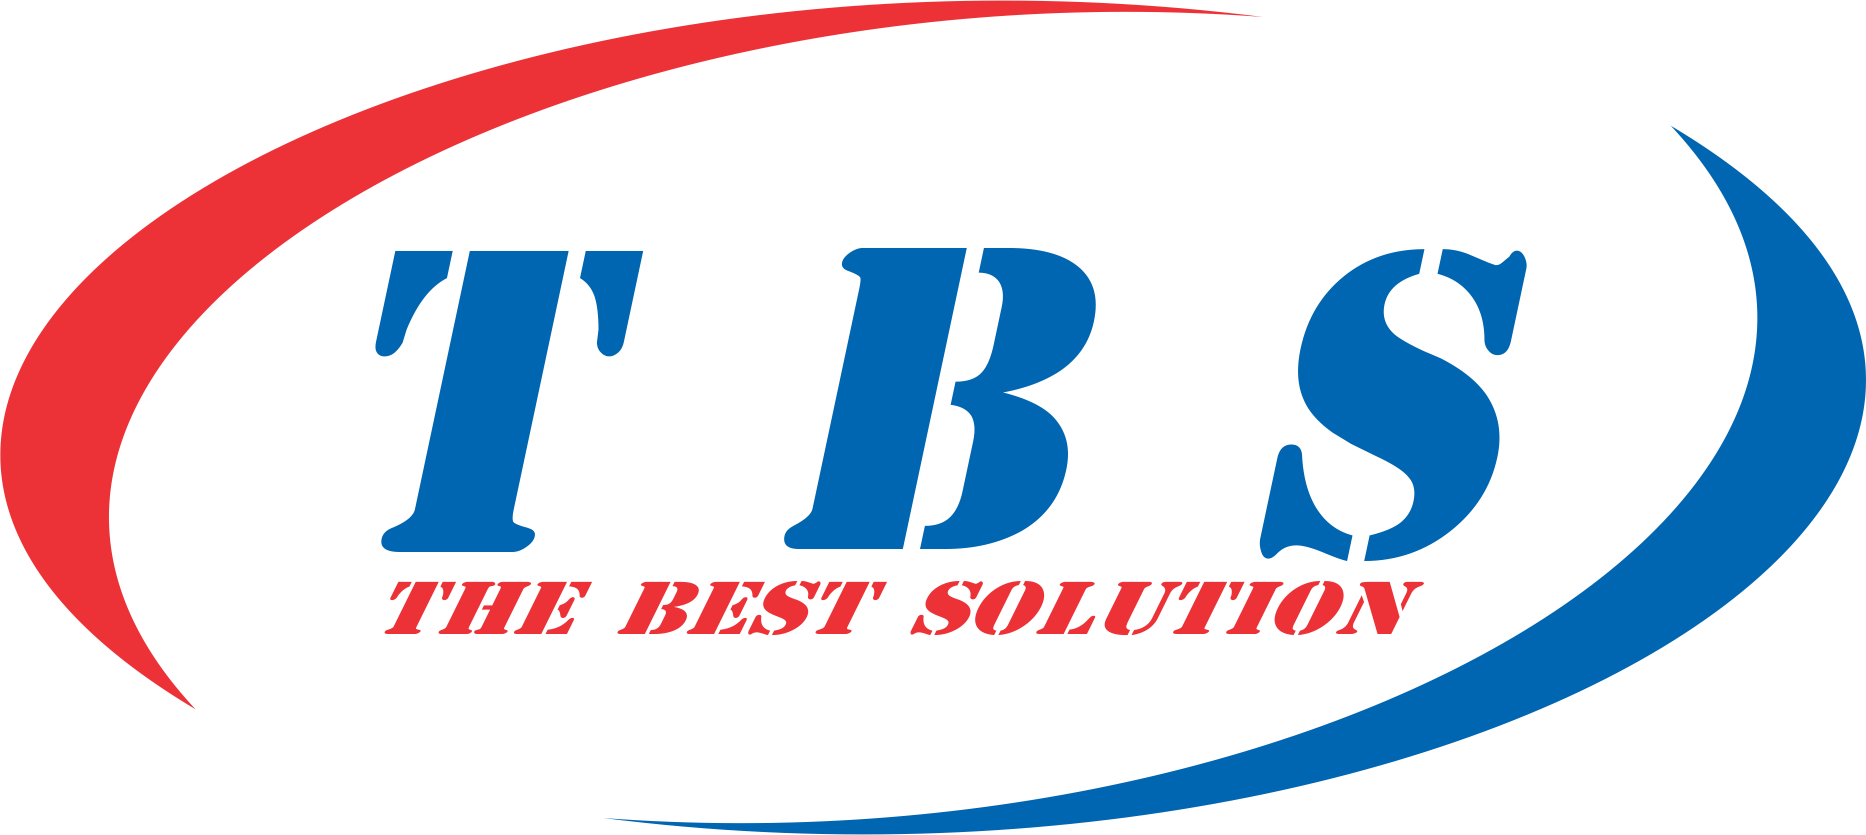 Công ty TBS